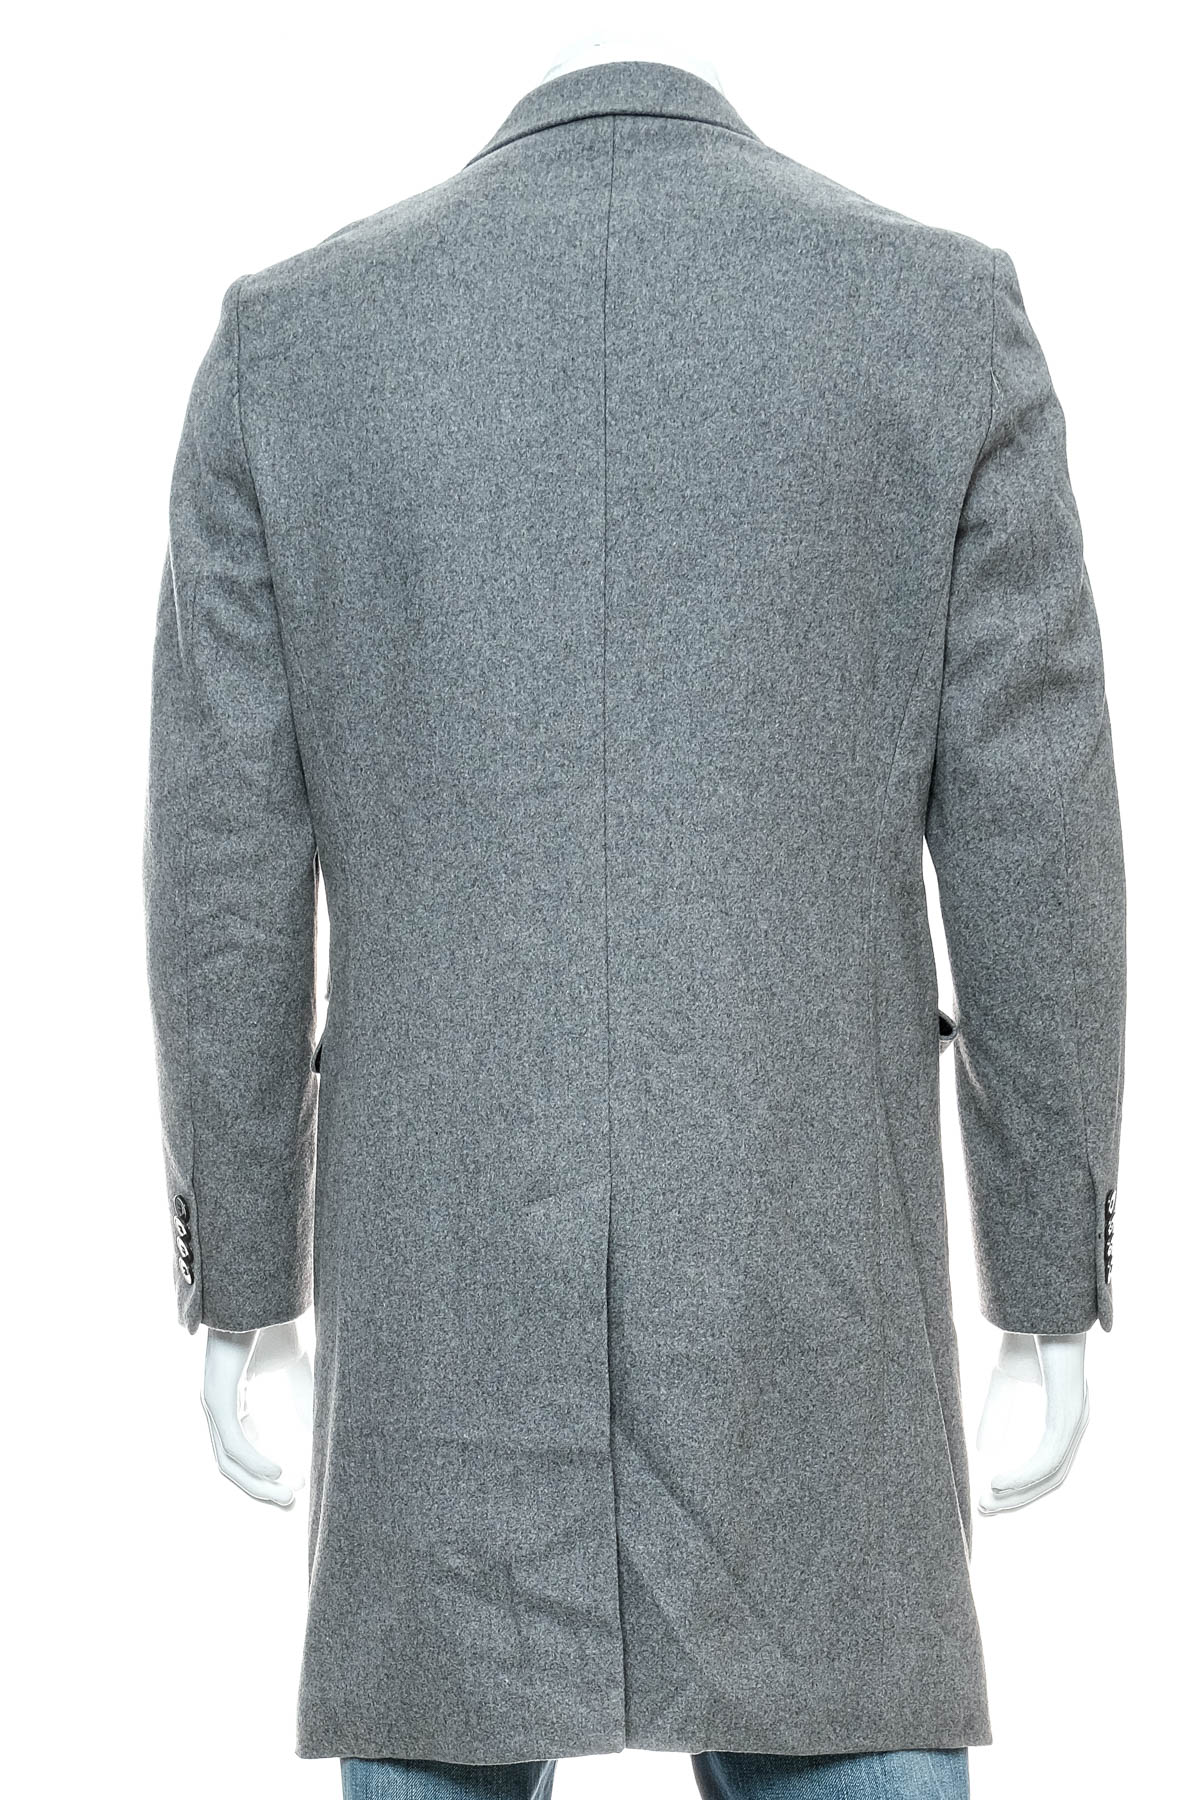 Men's coat - H&M - 1